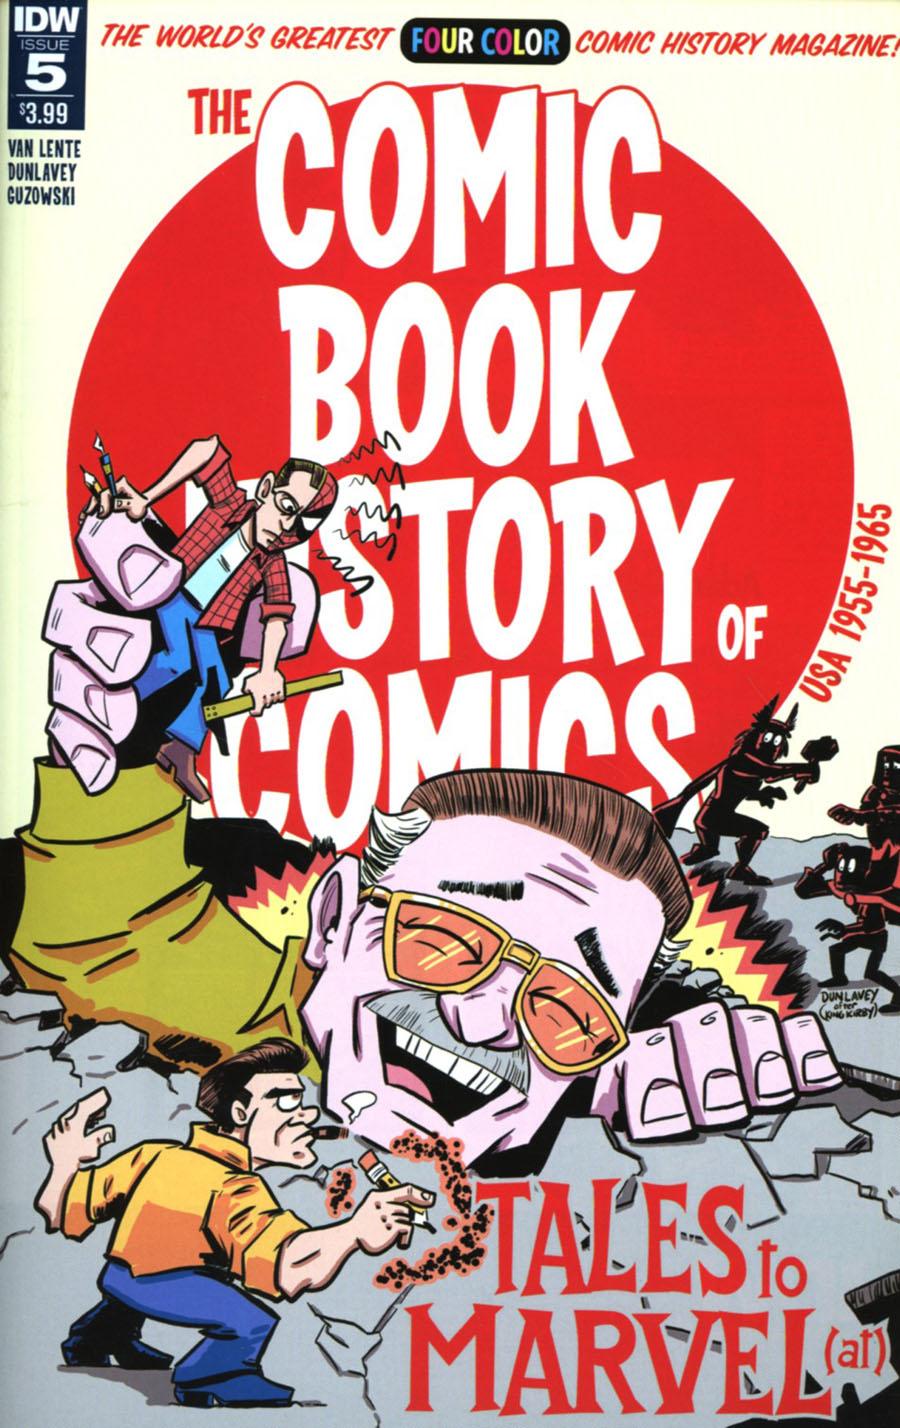 Comic Book History Of Comics Vol. 1 #5